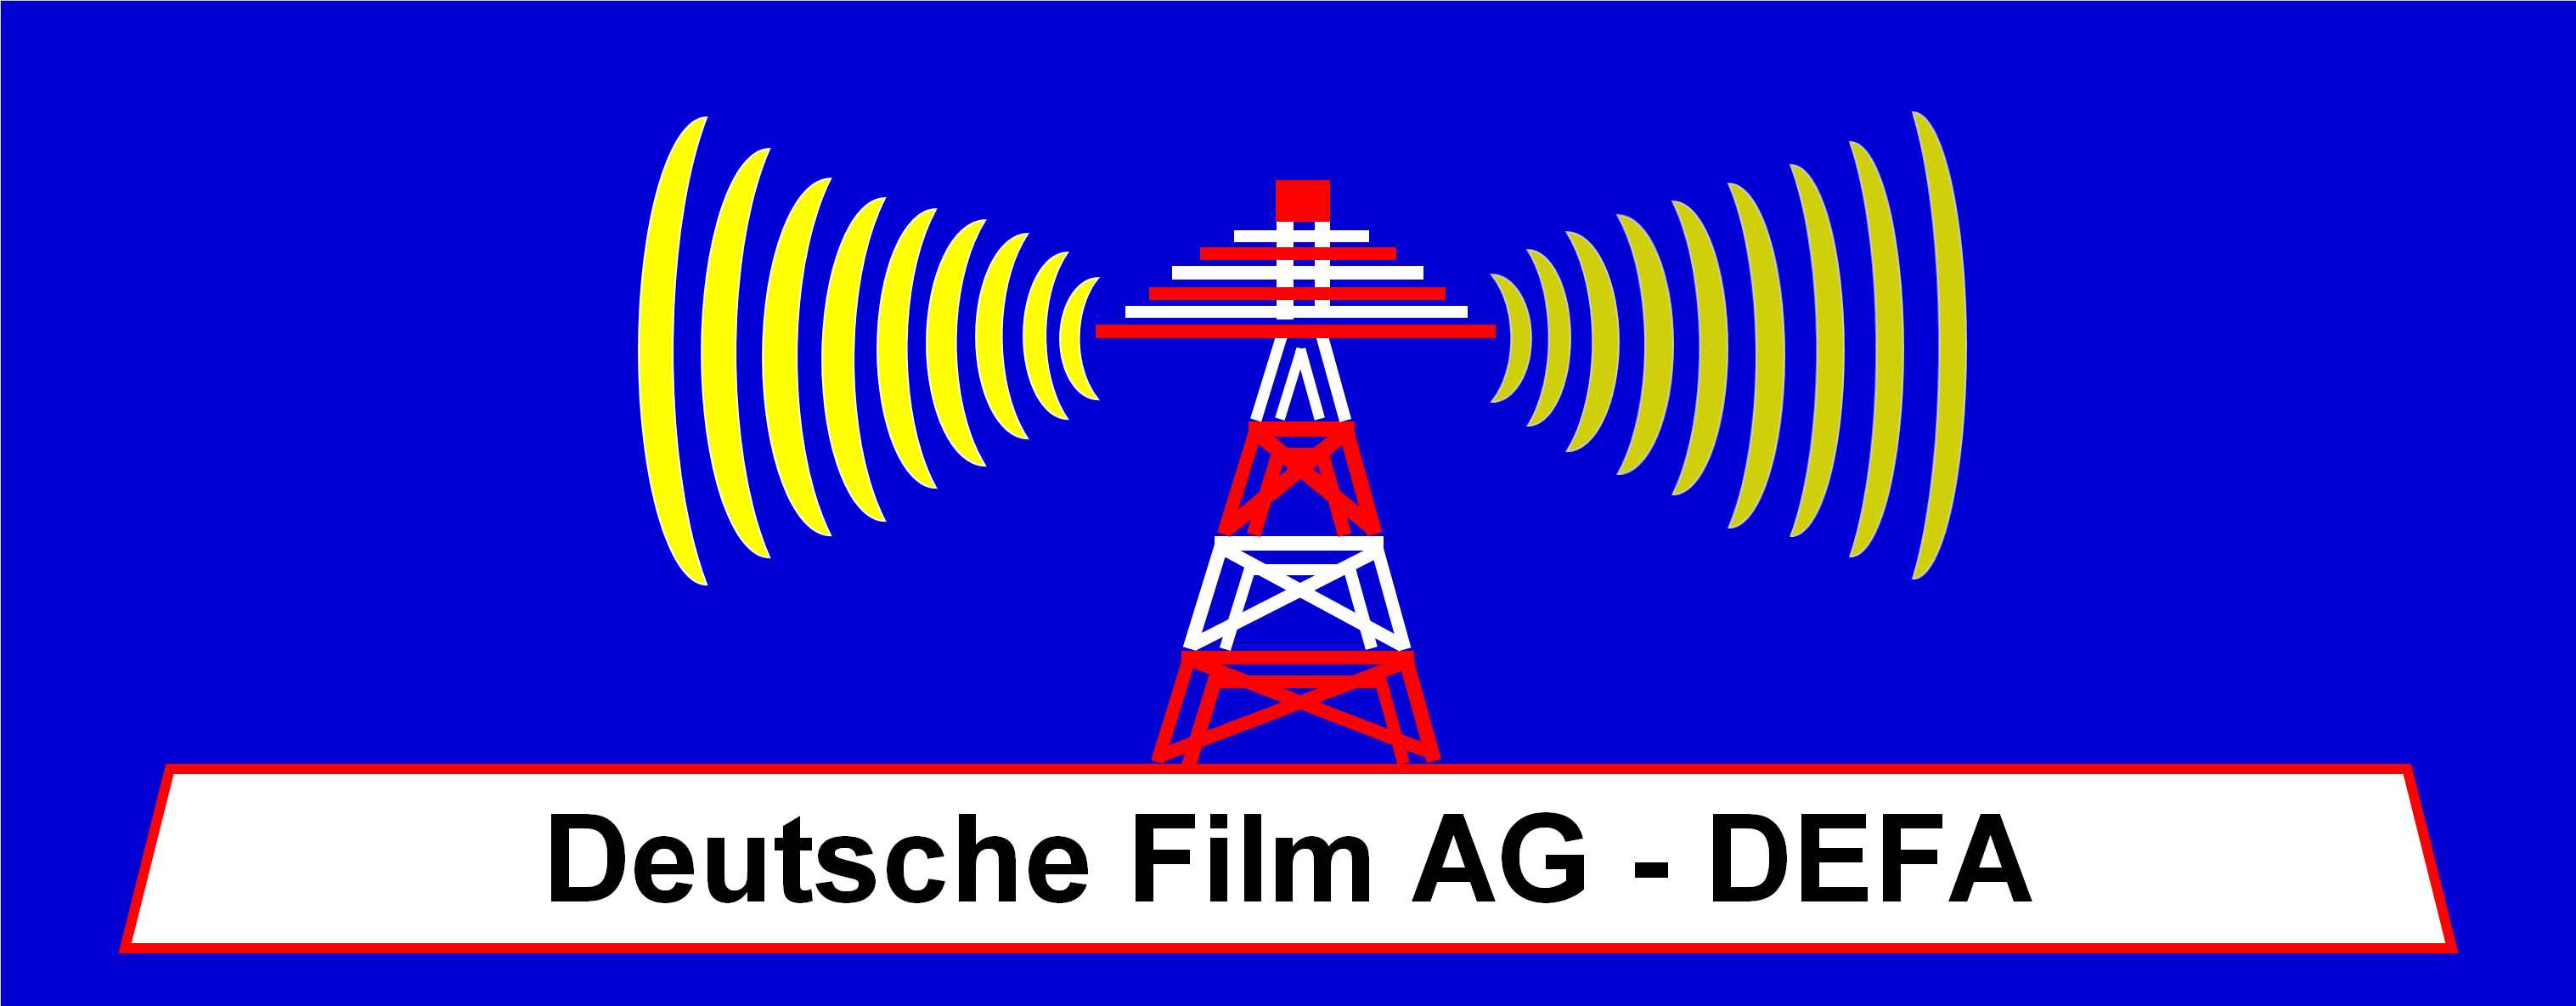 Deutsche Film AG - DEFA